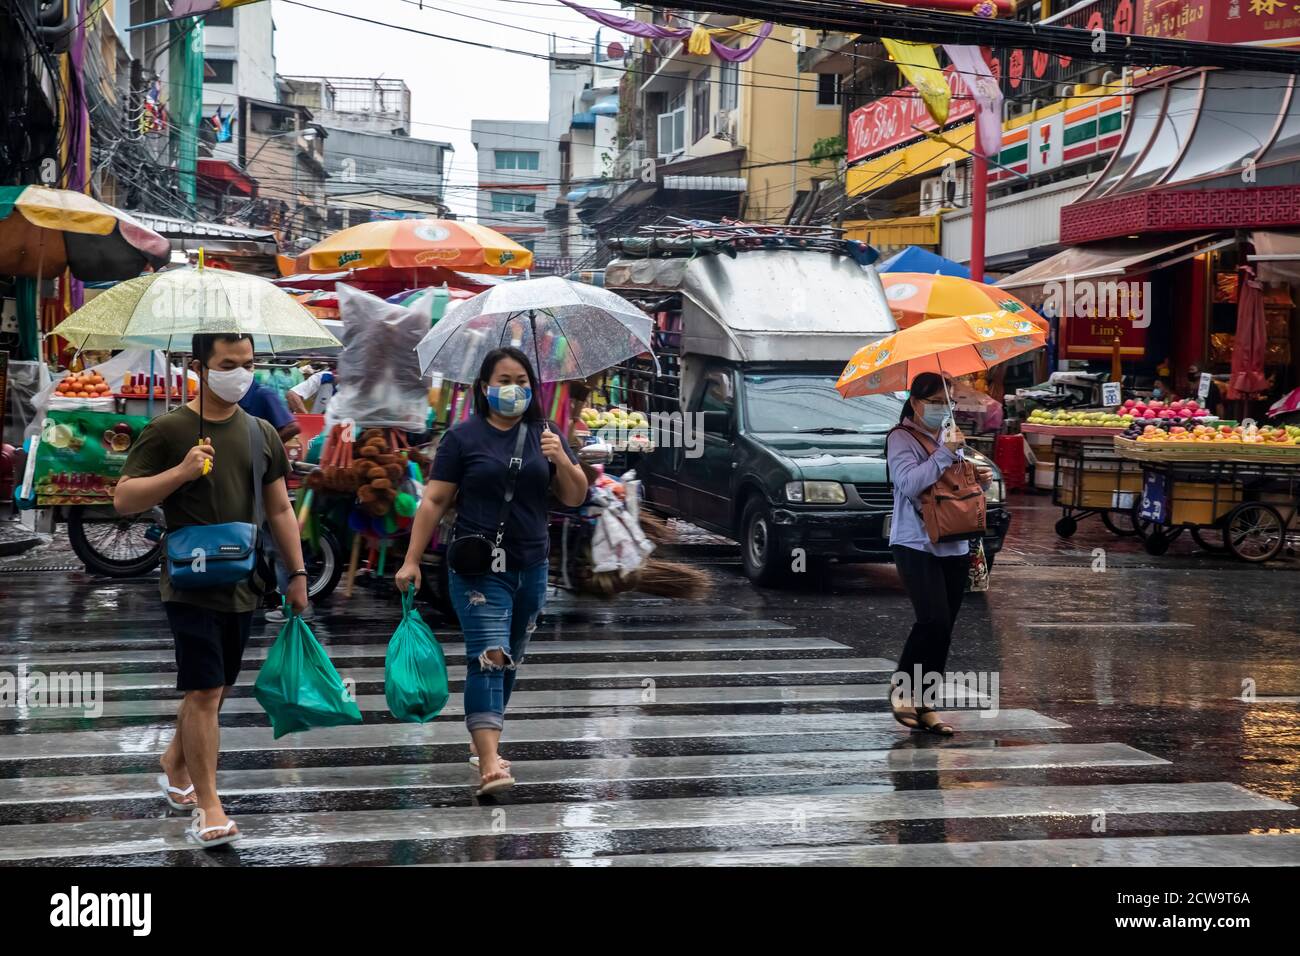 Les navetteurs défilent de l'autre côté de la rue pour commencer leur trajet pluvieux à la maison après des travaux dans le quartier chinois de Bangkok. Banque D'Images